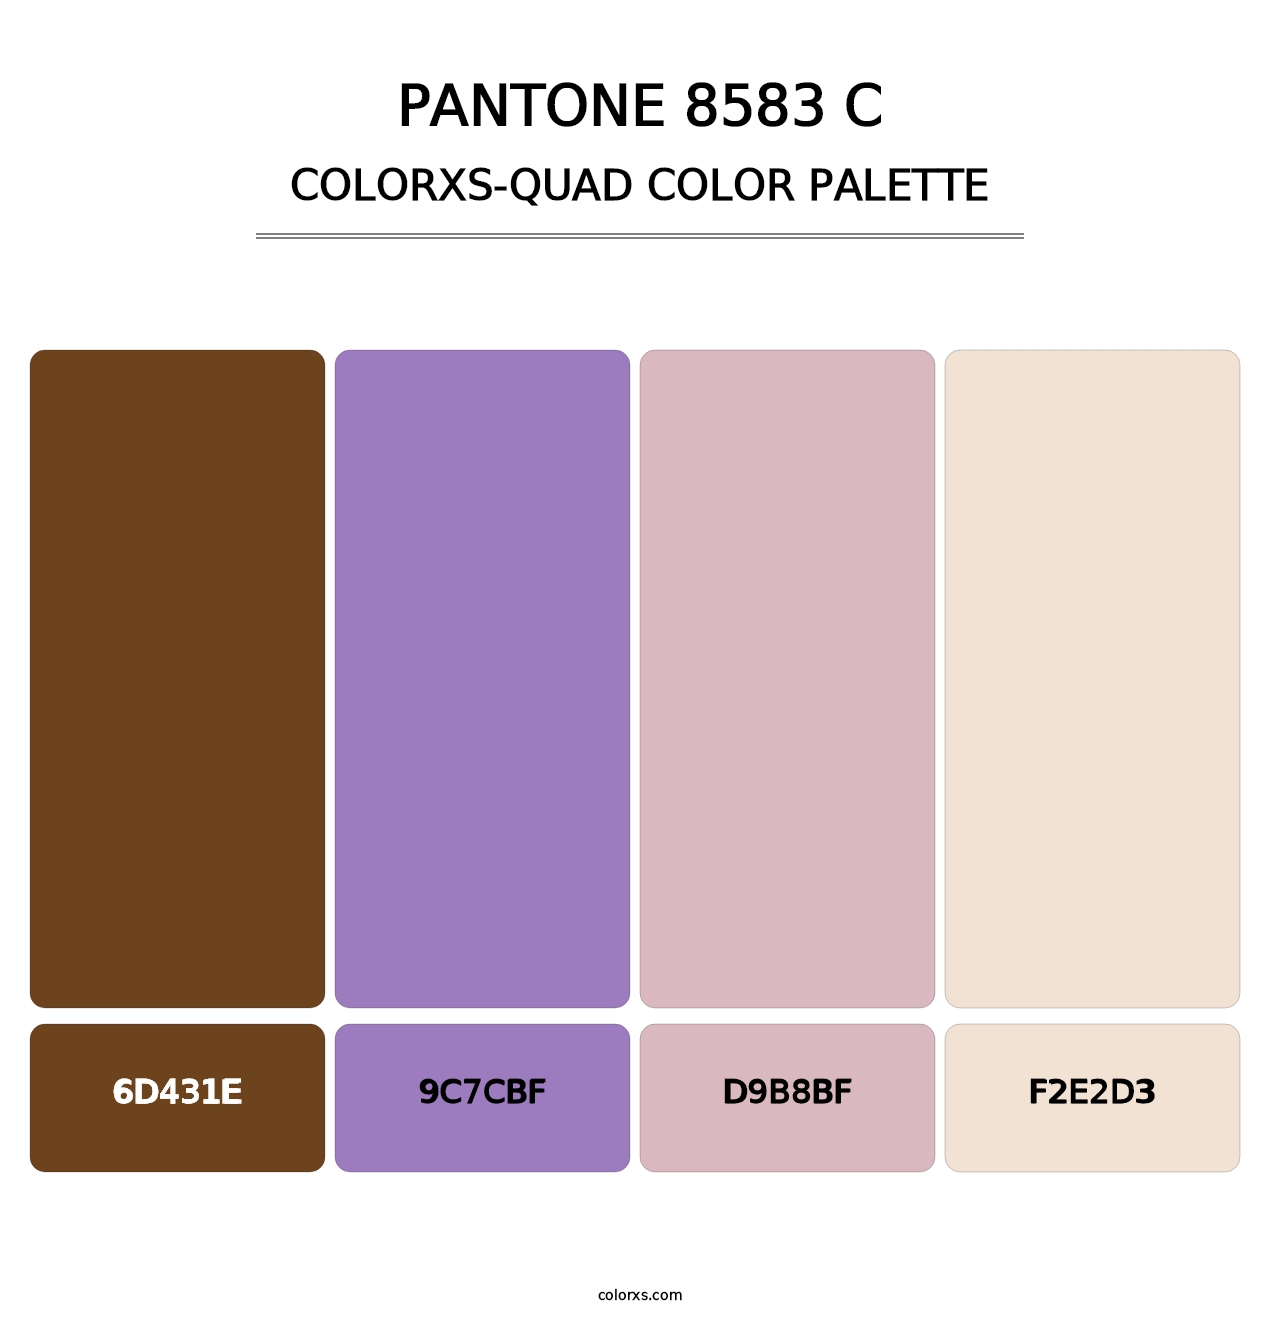 PANTONE 8583 C - Colorxs Quad Palette